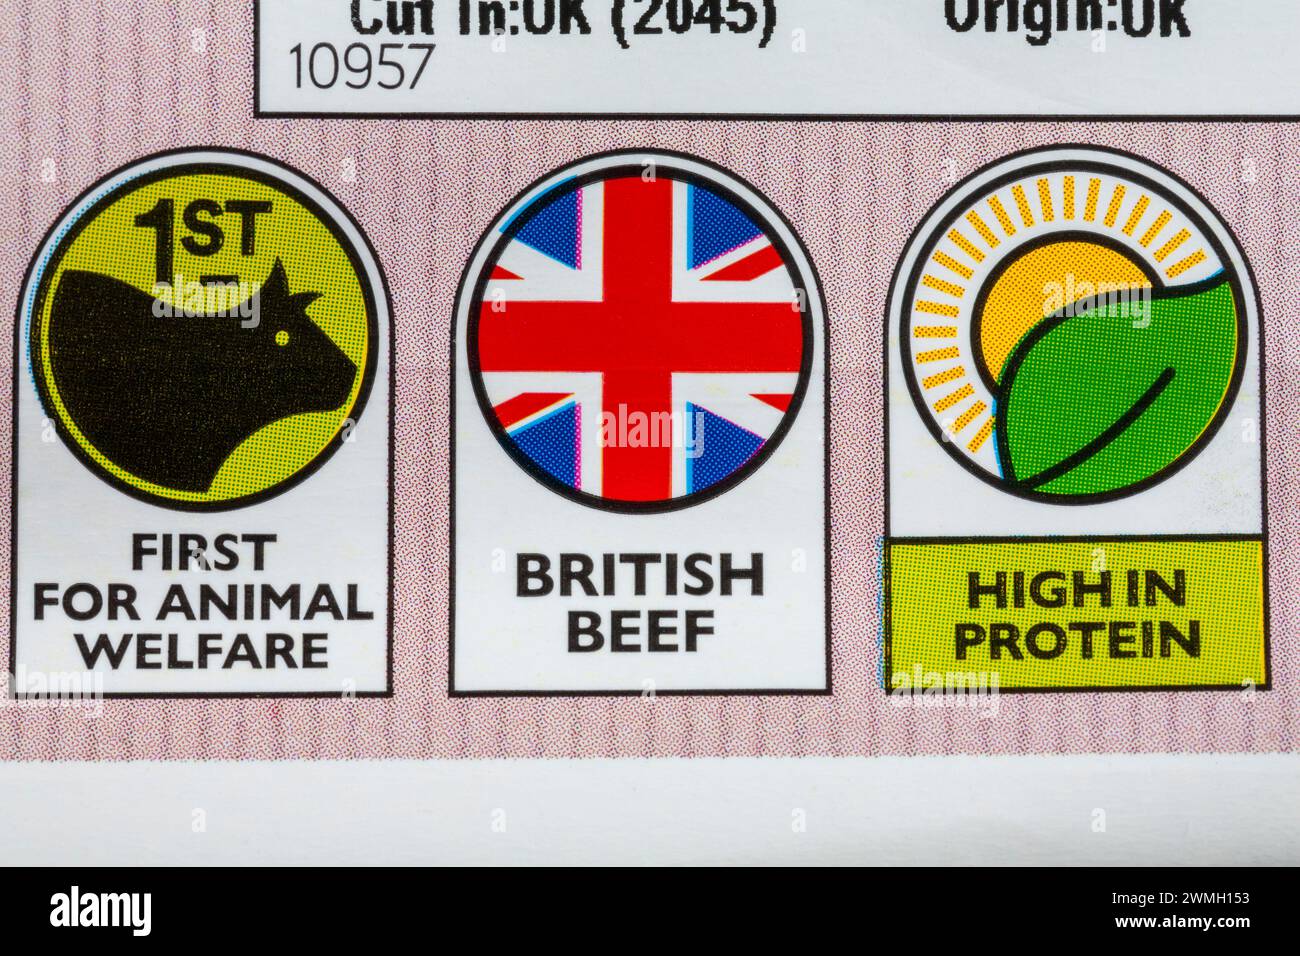 Premier pour le bien-être animal, le bœuf britannique, les symboles riches en protéines sur le paquet de filet de bœuf britannique Steak de races locales de Waitrose Banque D'Images